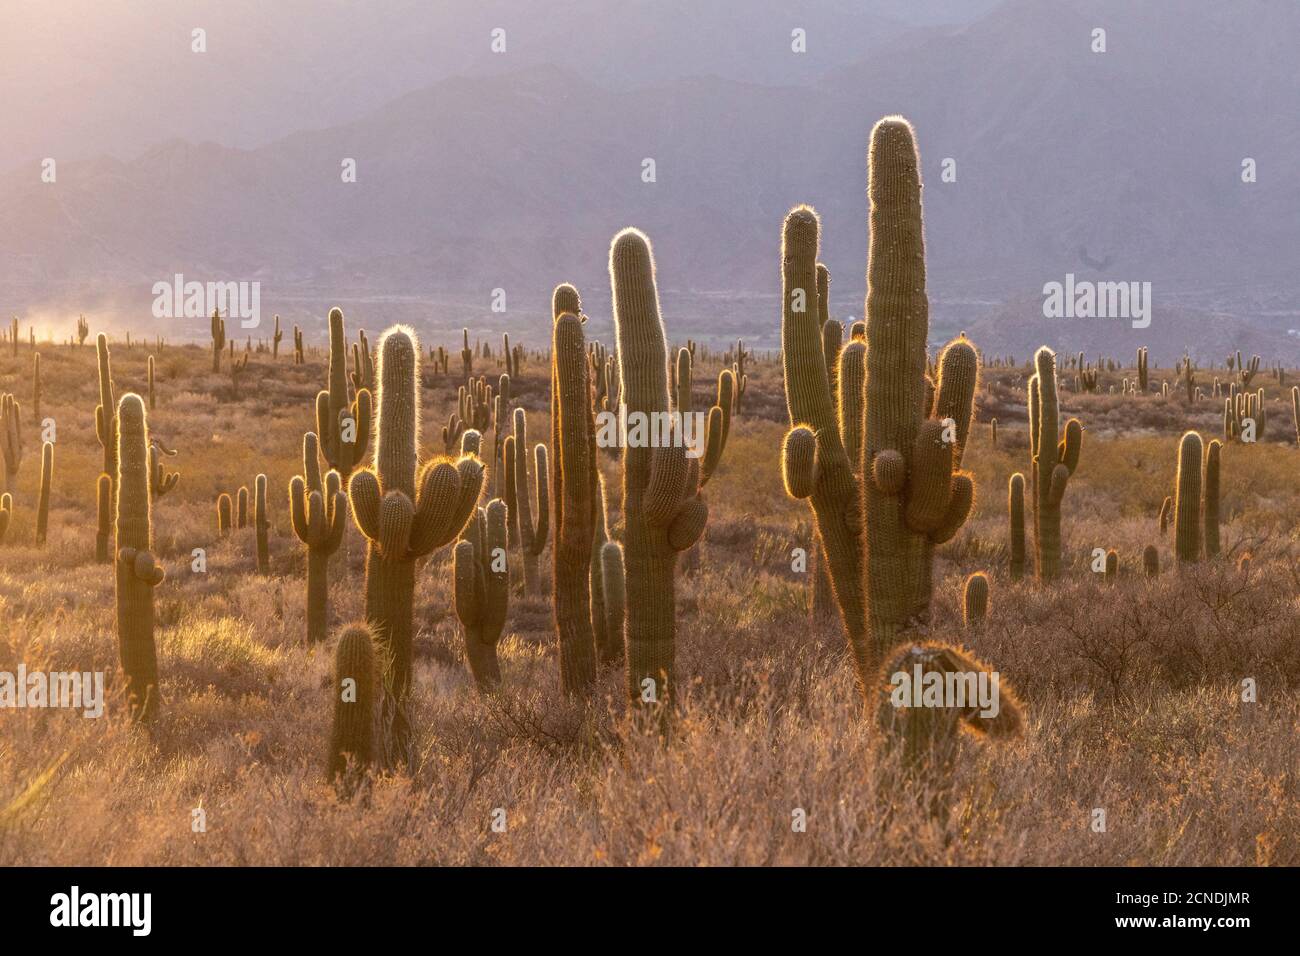 Coucher de soleil sur le cactus du saguaro argentin (Echinopsis terscheckii), parc national de Los Cardones, province de Salta, Argentine Banque D'Images